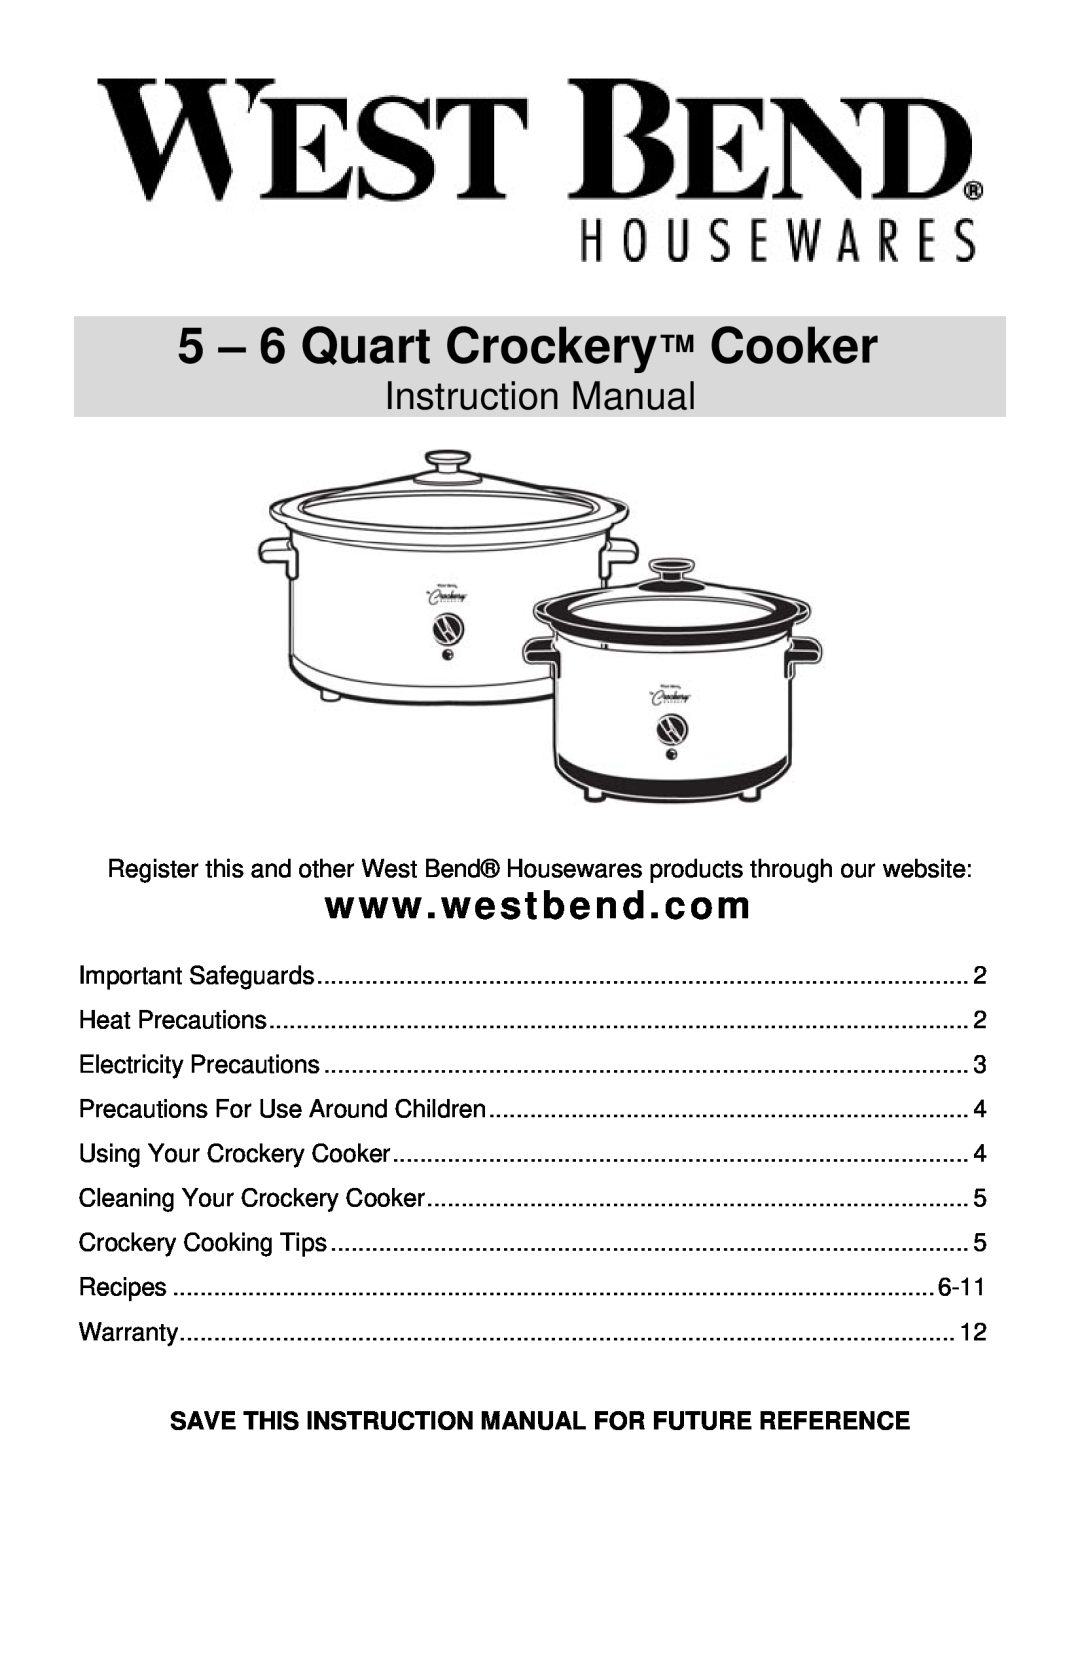 West Bend 5 6 Quart CrockeryTM Cooker instruction manual 5 – 6 Quart Crockery Cooker, Instruction Manual 